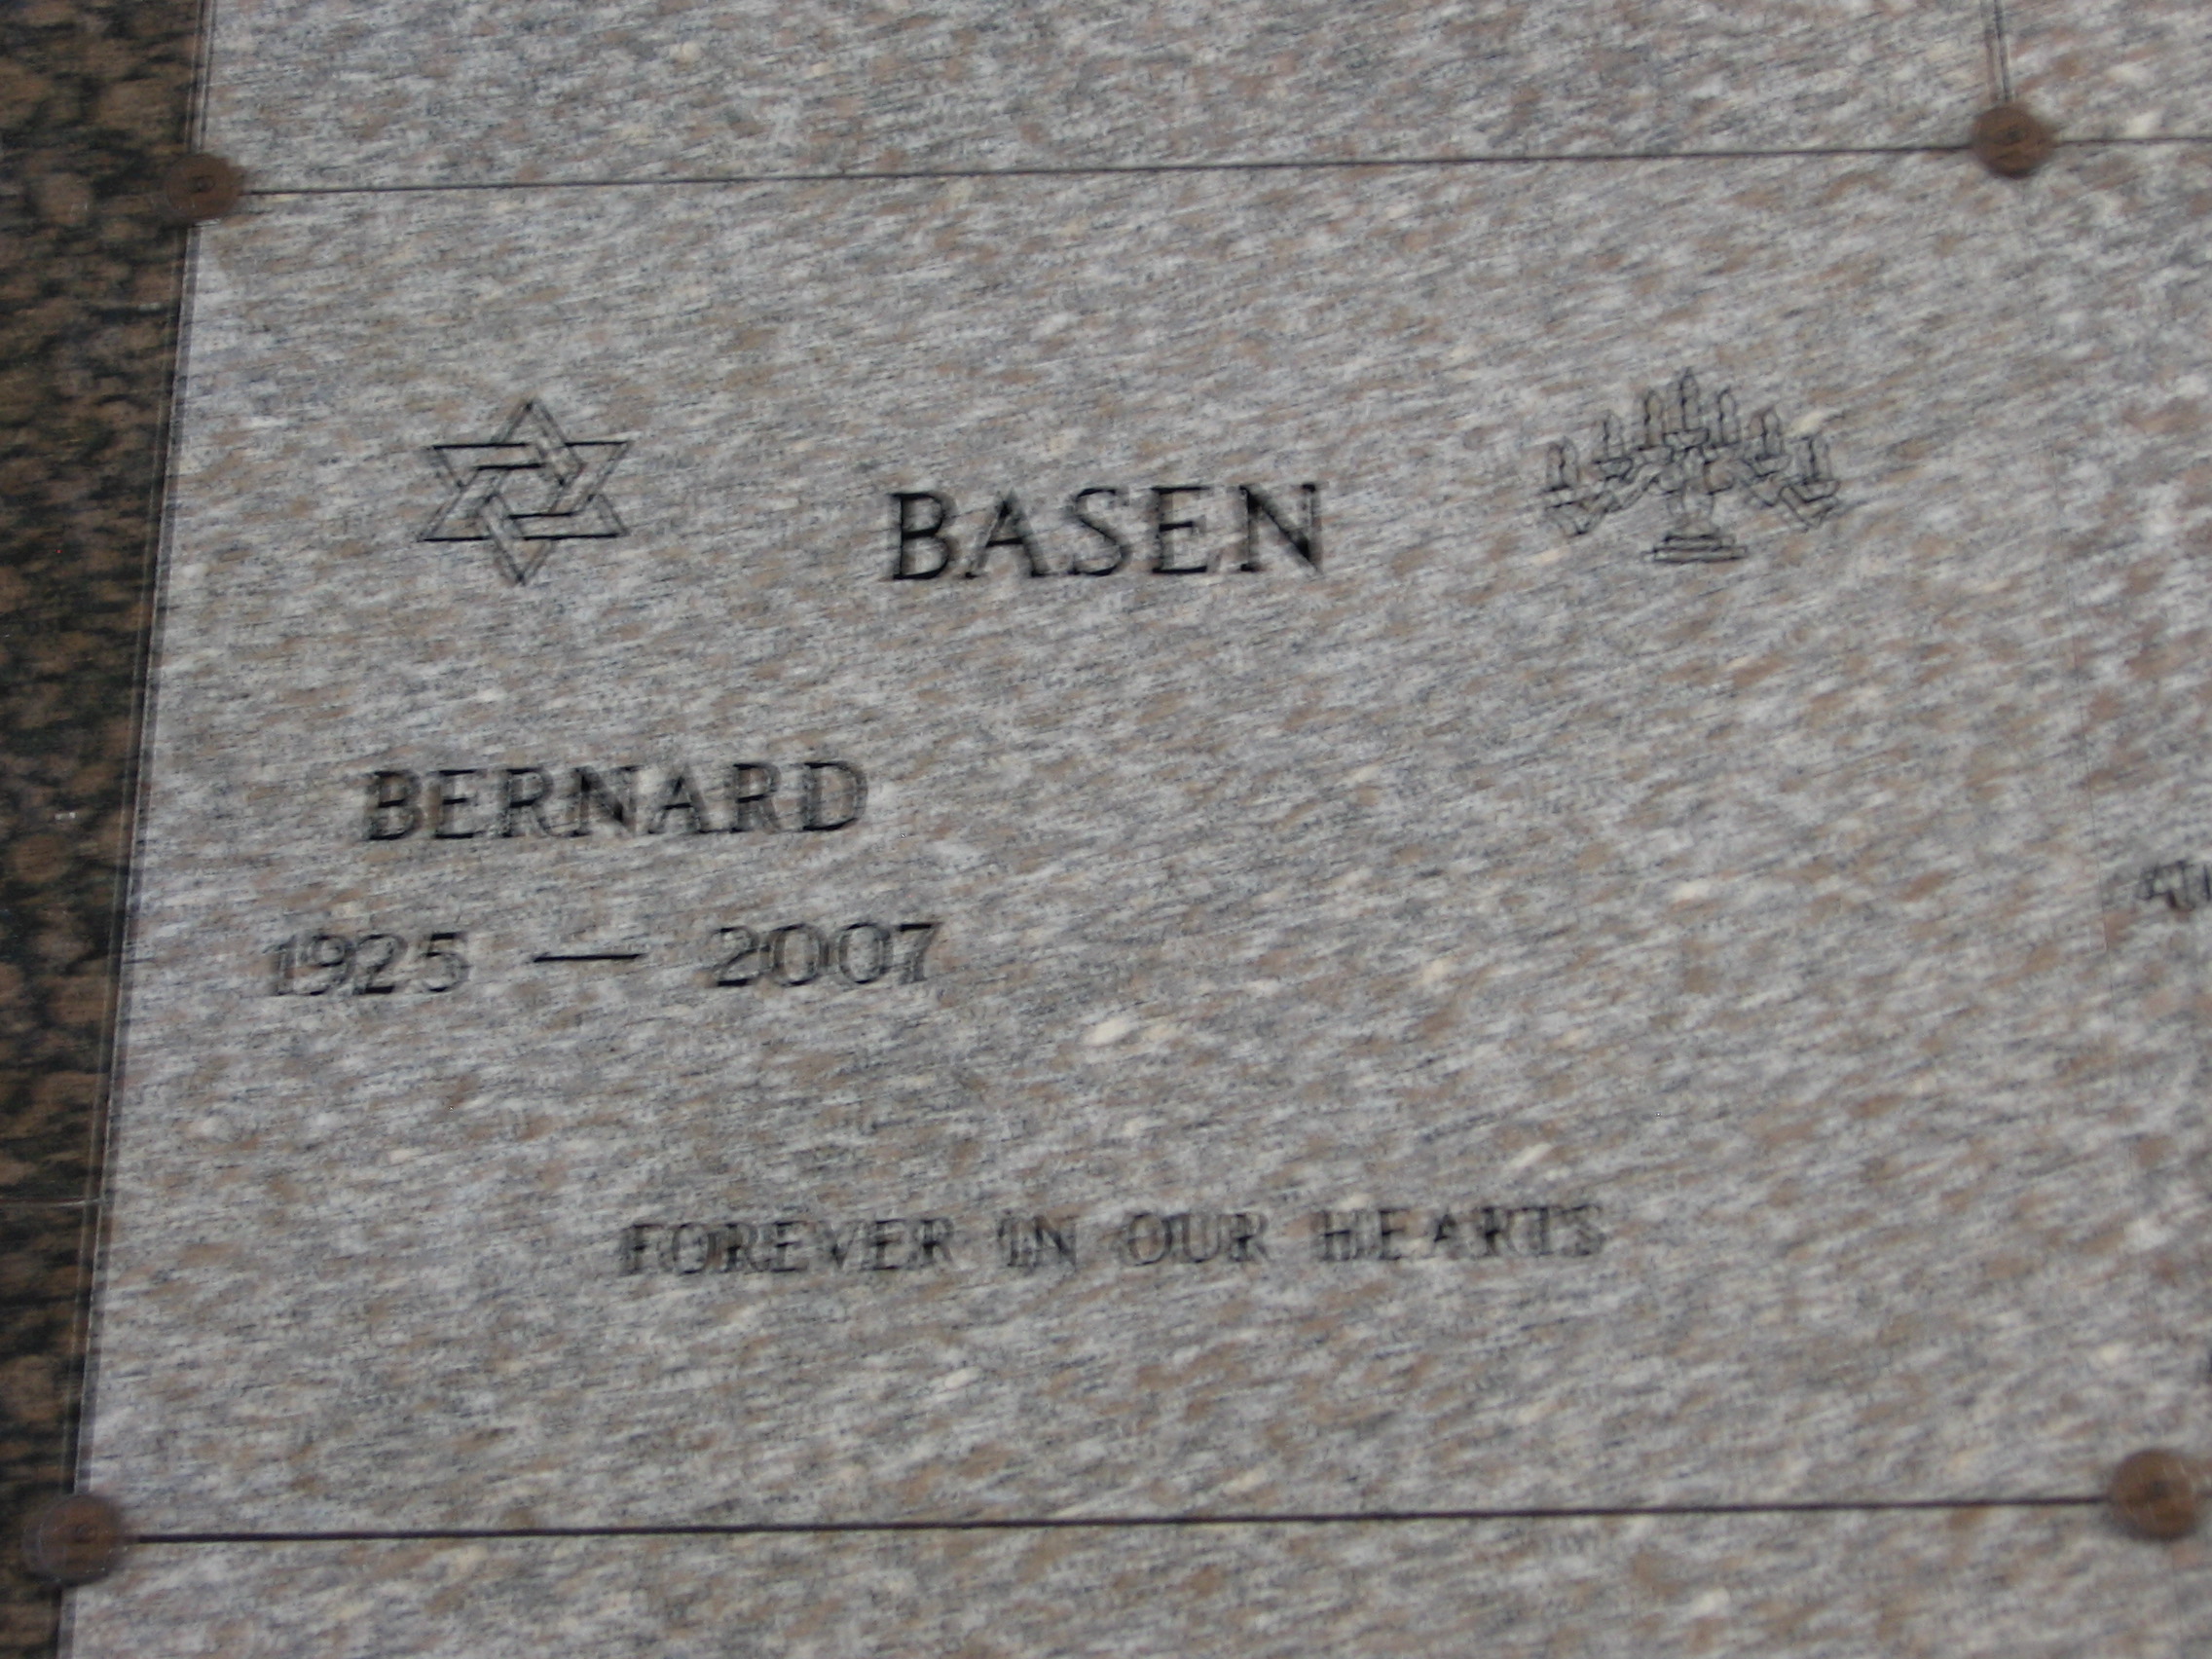 Bernard Basen